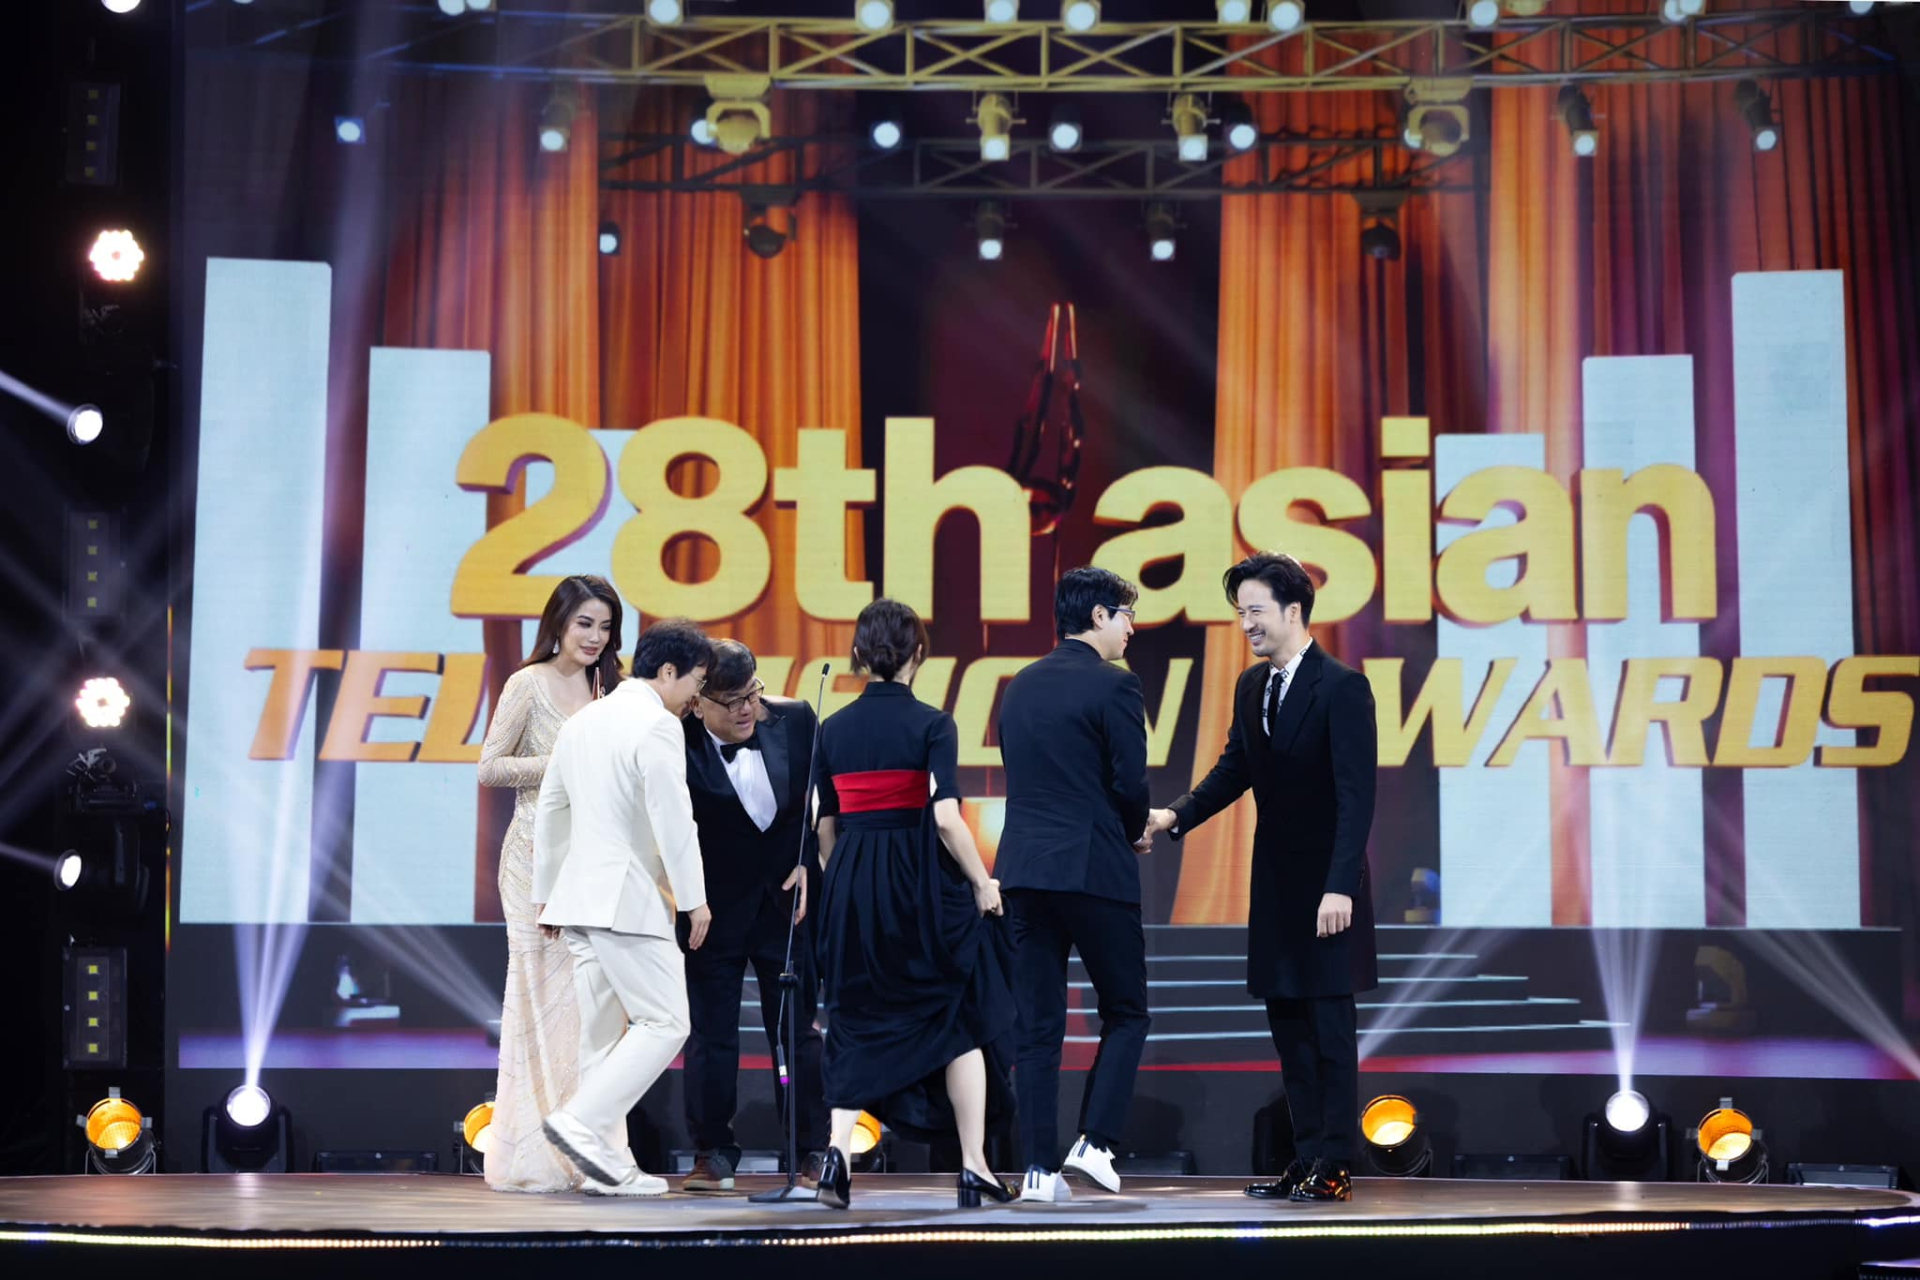 Đoàn Minh Tài sánh đôi cùng Trương Ngọc Ánh, Ngọc Thanh Tâm đại diện trao giải tại sự kiện ATA Asian Television Awards - ảnh 6